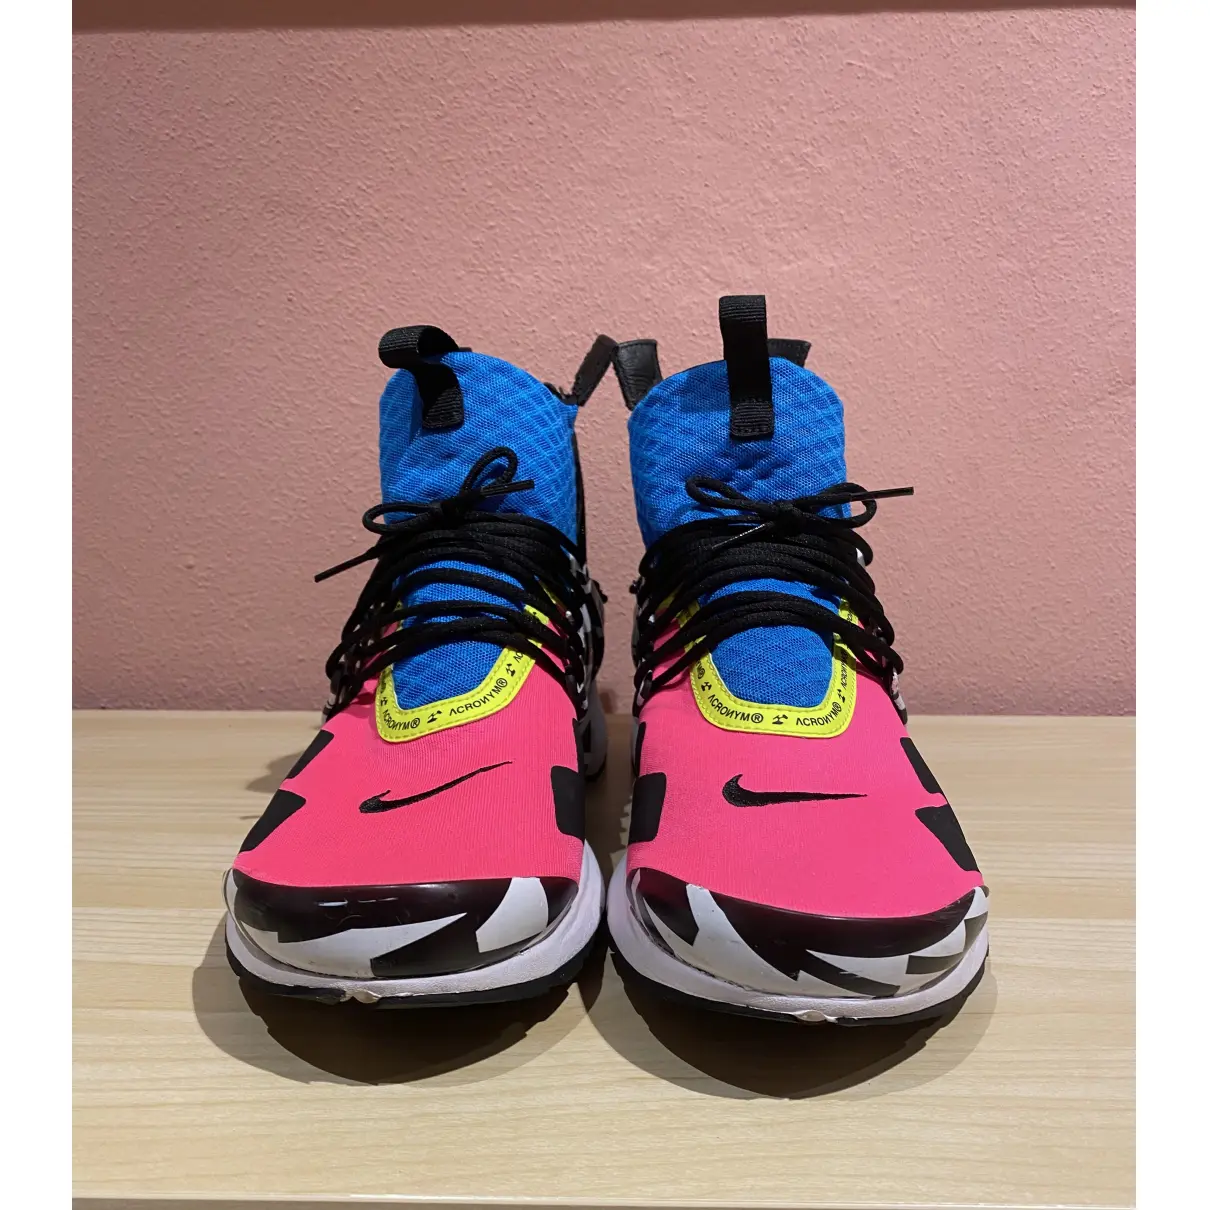 Buy Nike x Acronym Air Presto cloth high trainers online